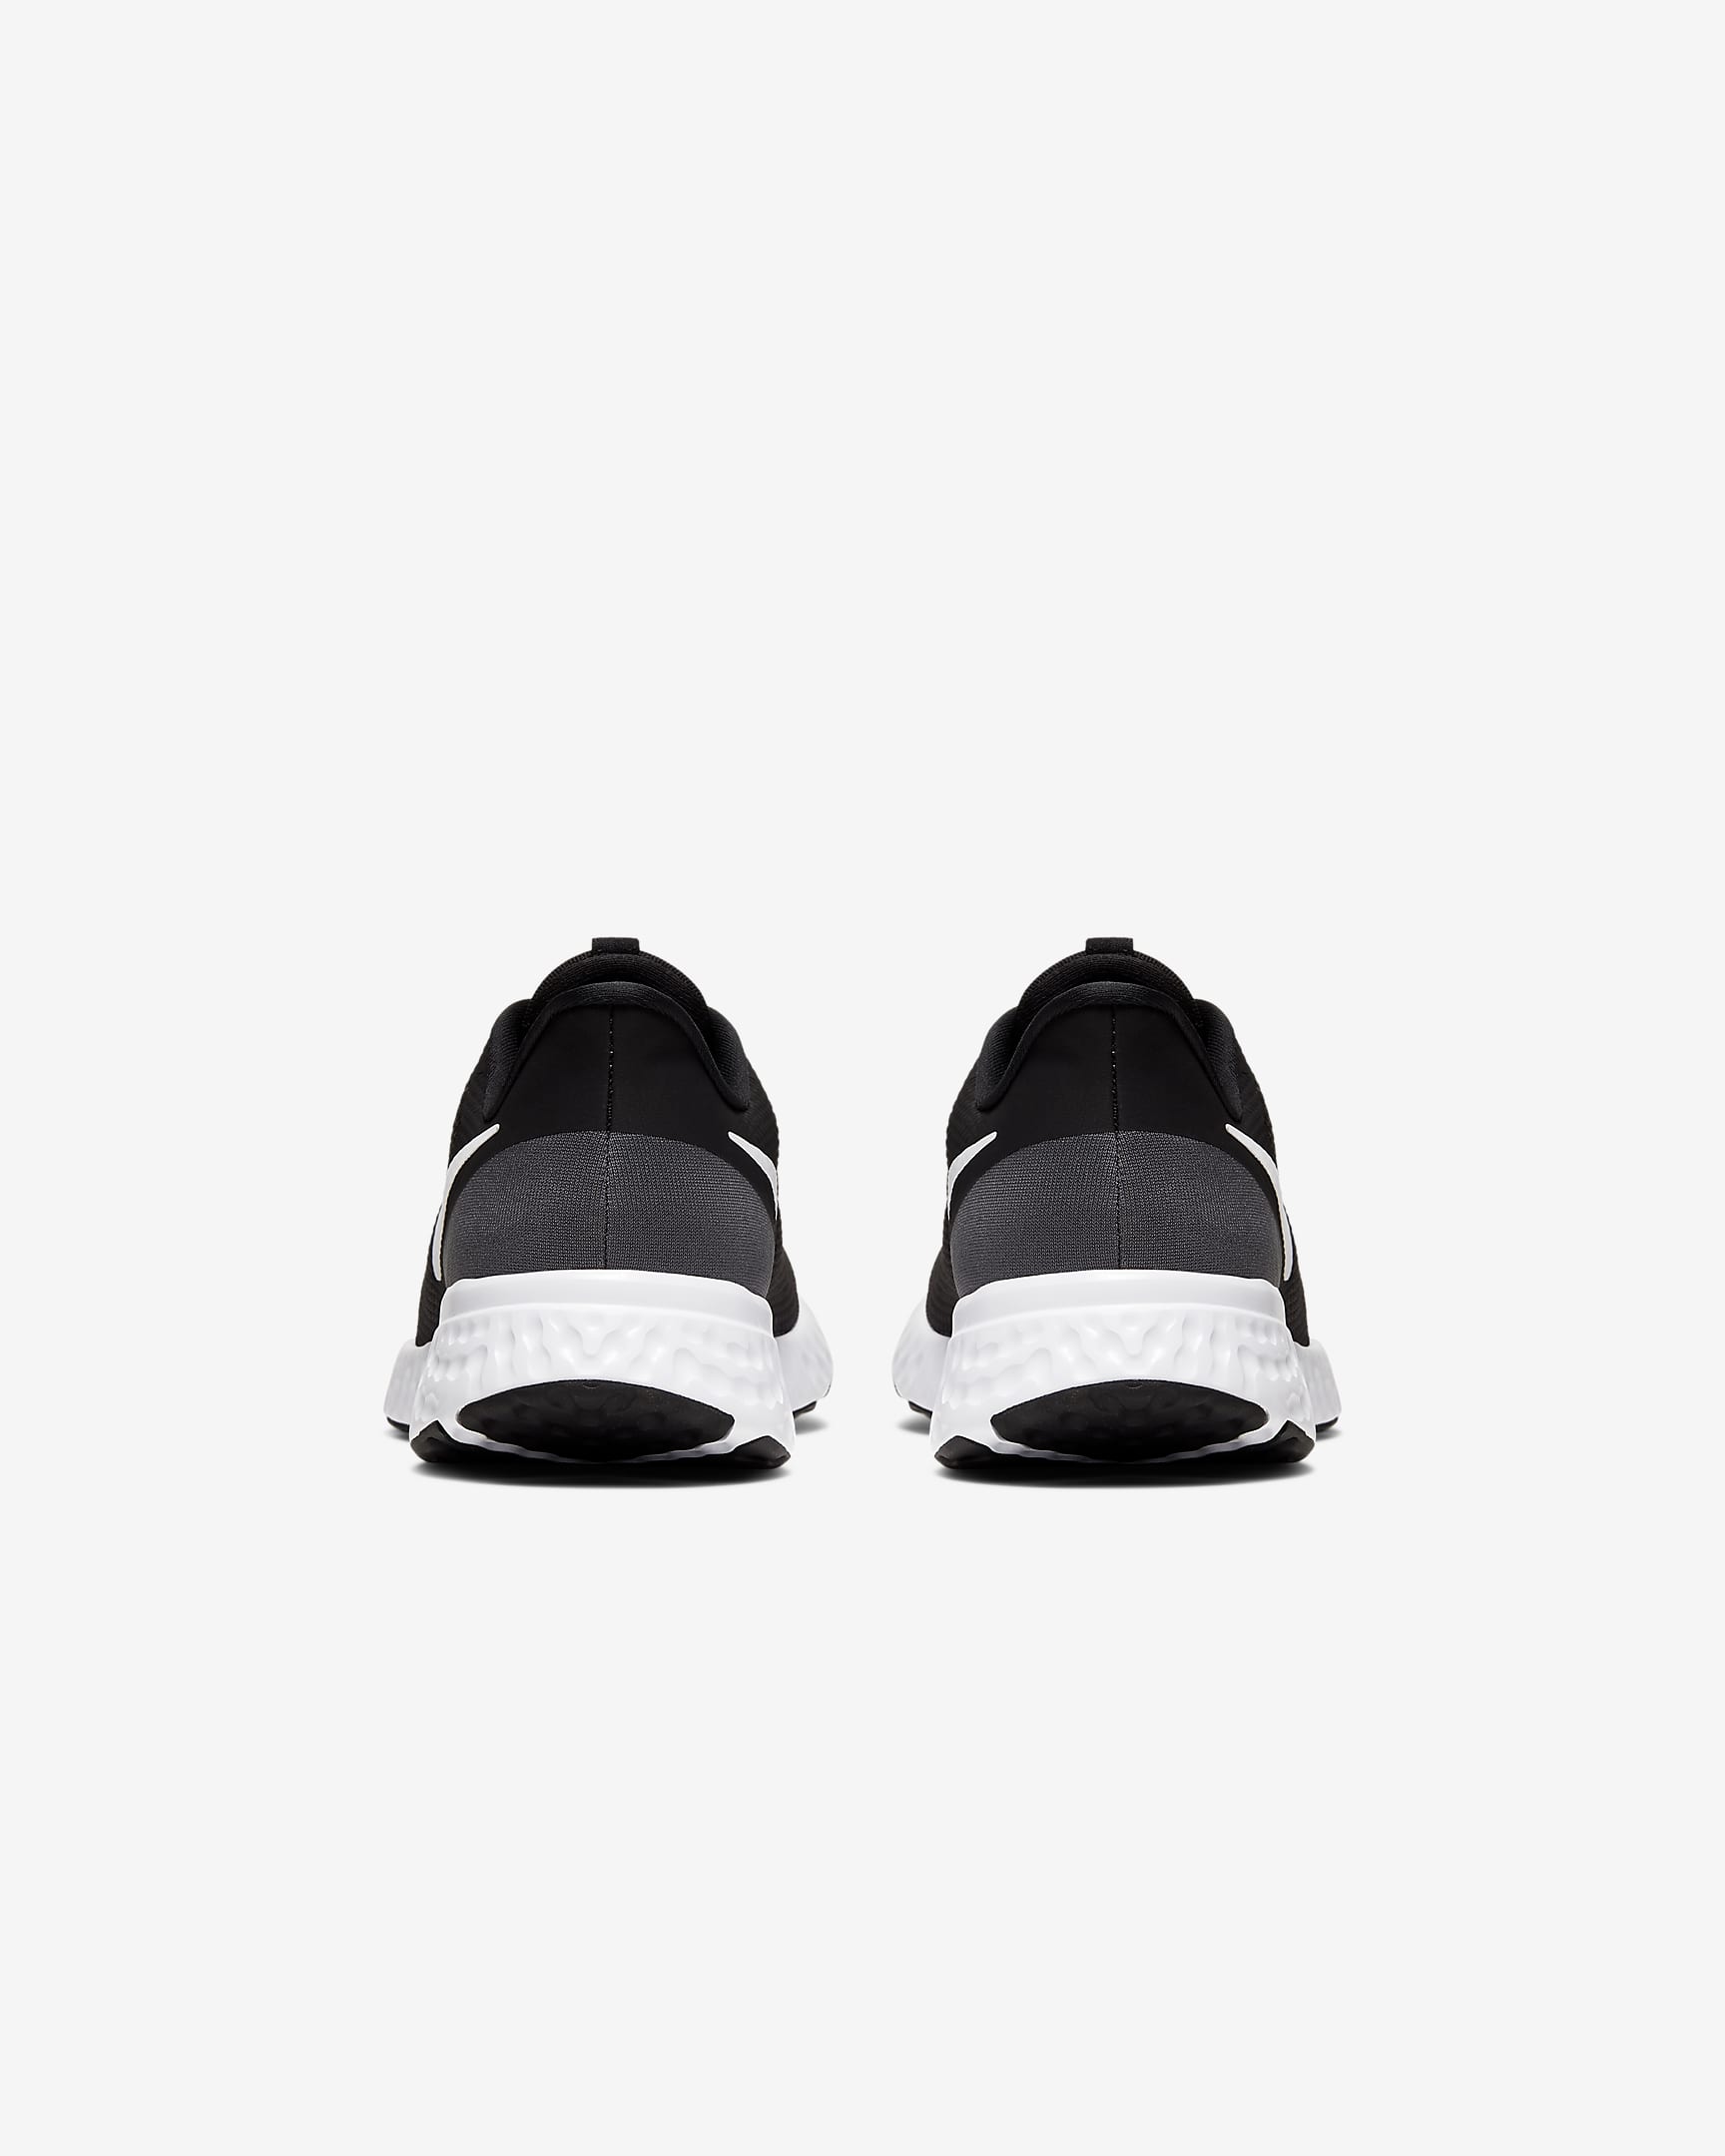 Nike Revolution 5 Men's Road Running Shoes - Black/Anthracite/White